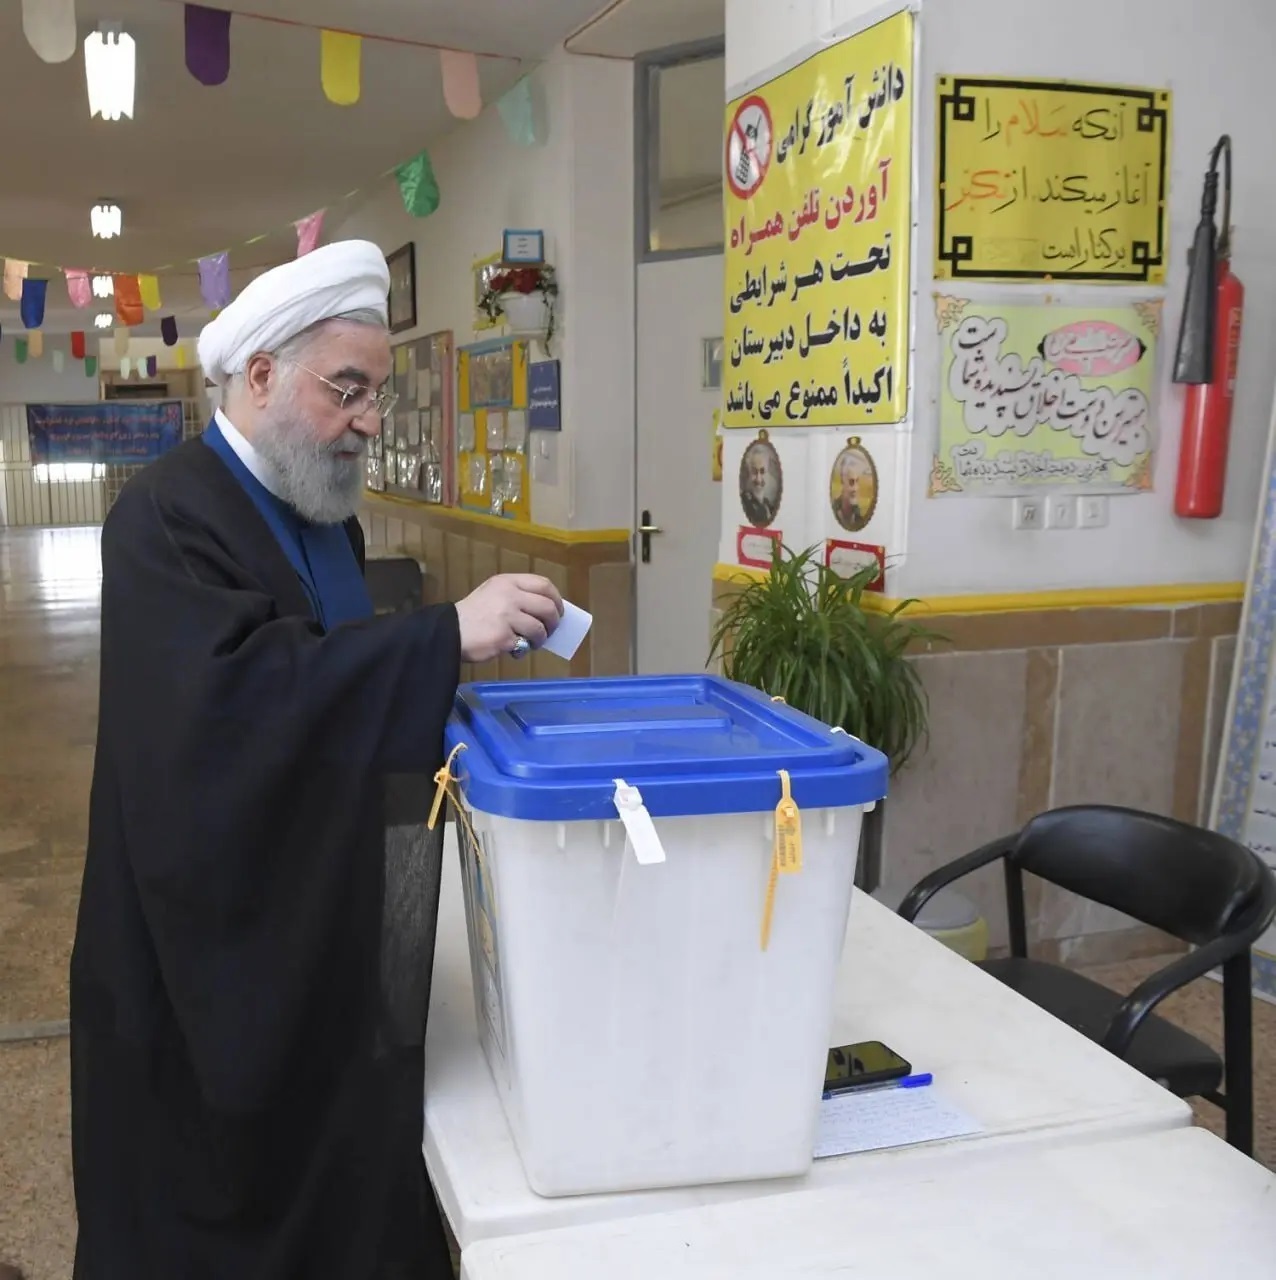 حسن روحانی رای خود را به صندوق انداخت + عکس